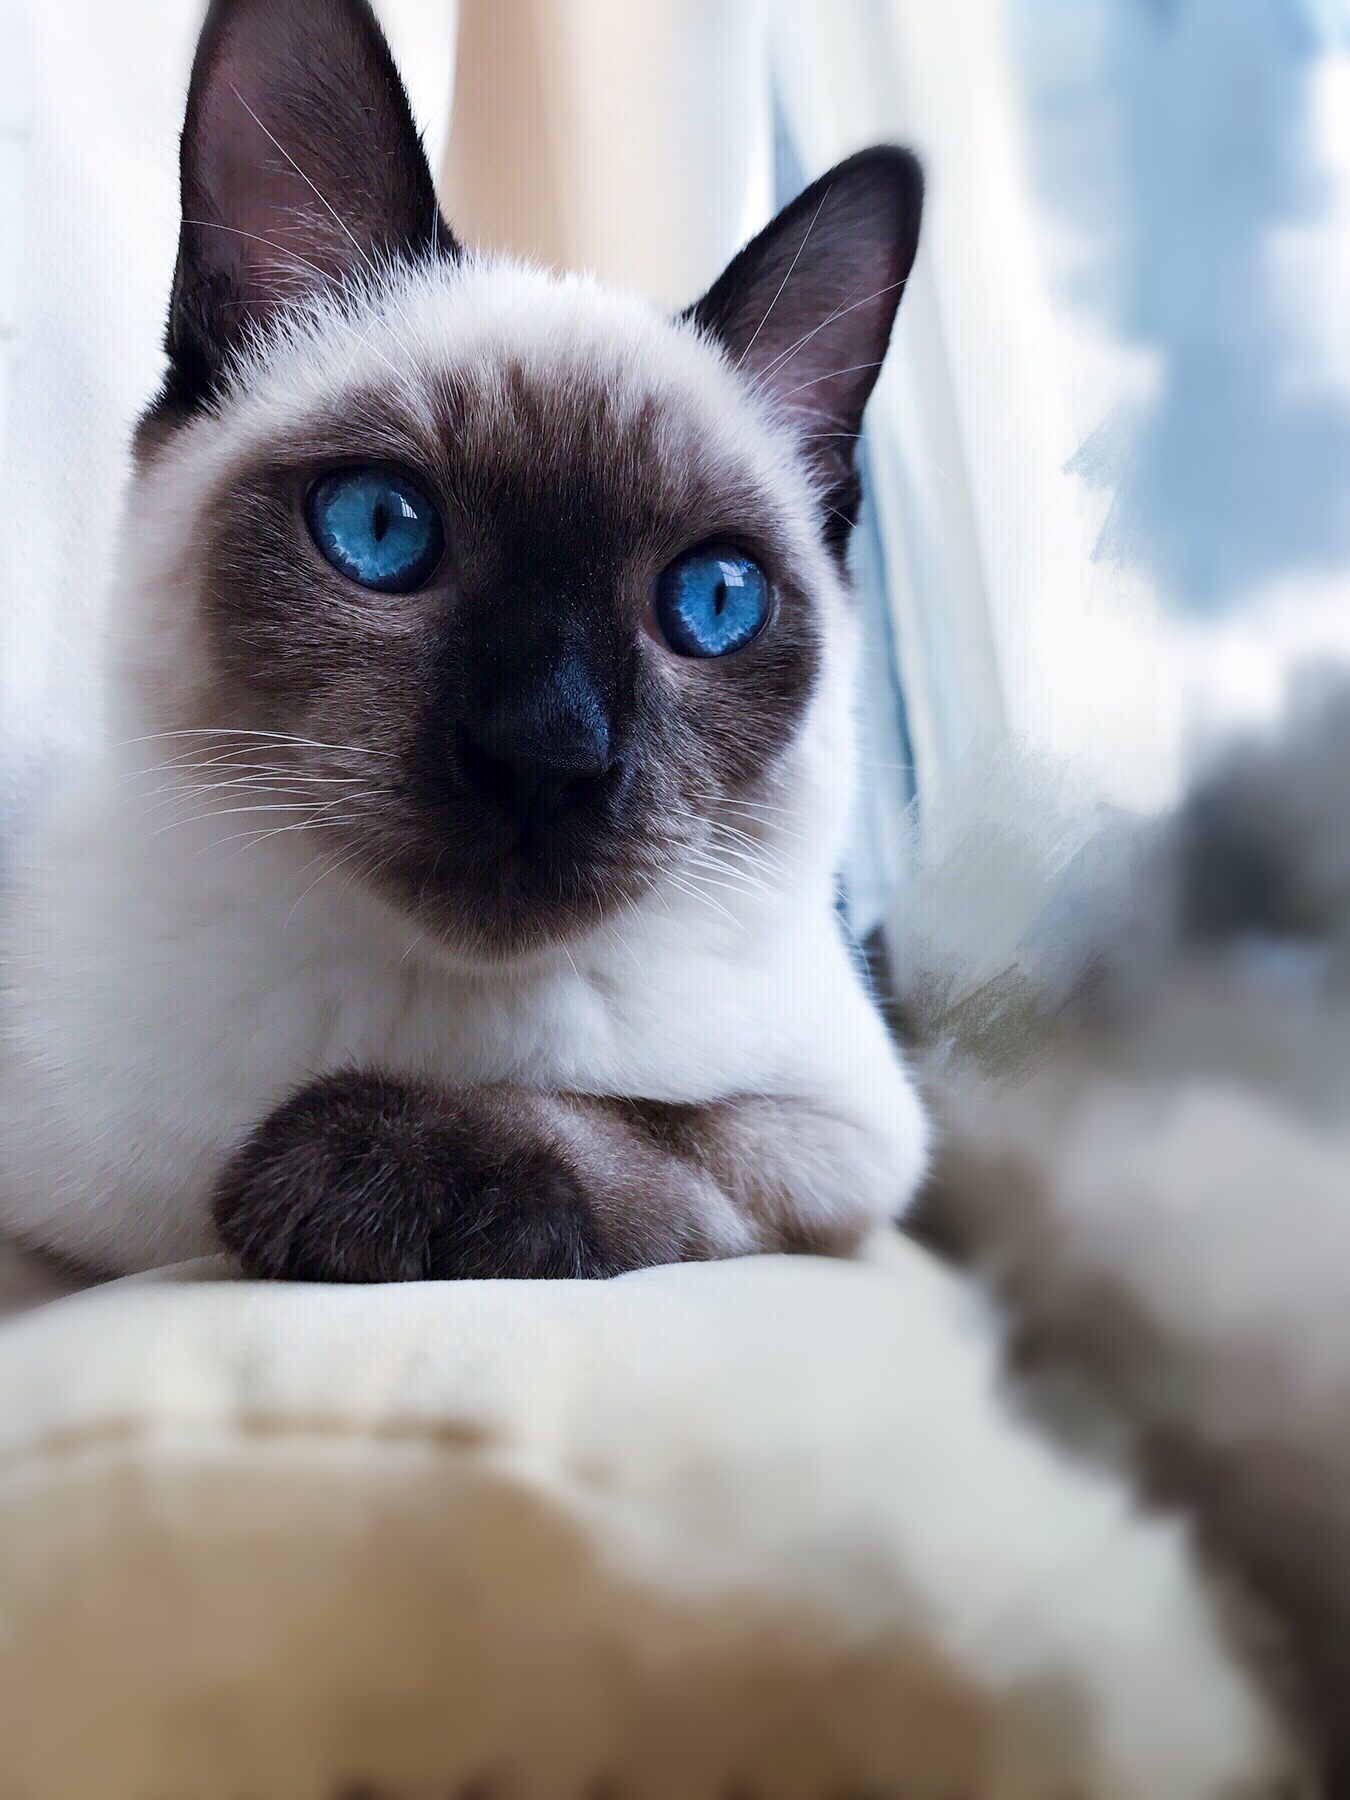 朋友送来的狸花猫,蓝眼睛哎